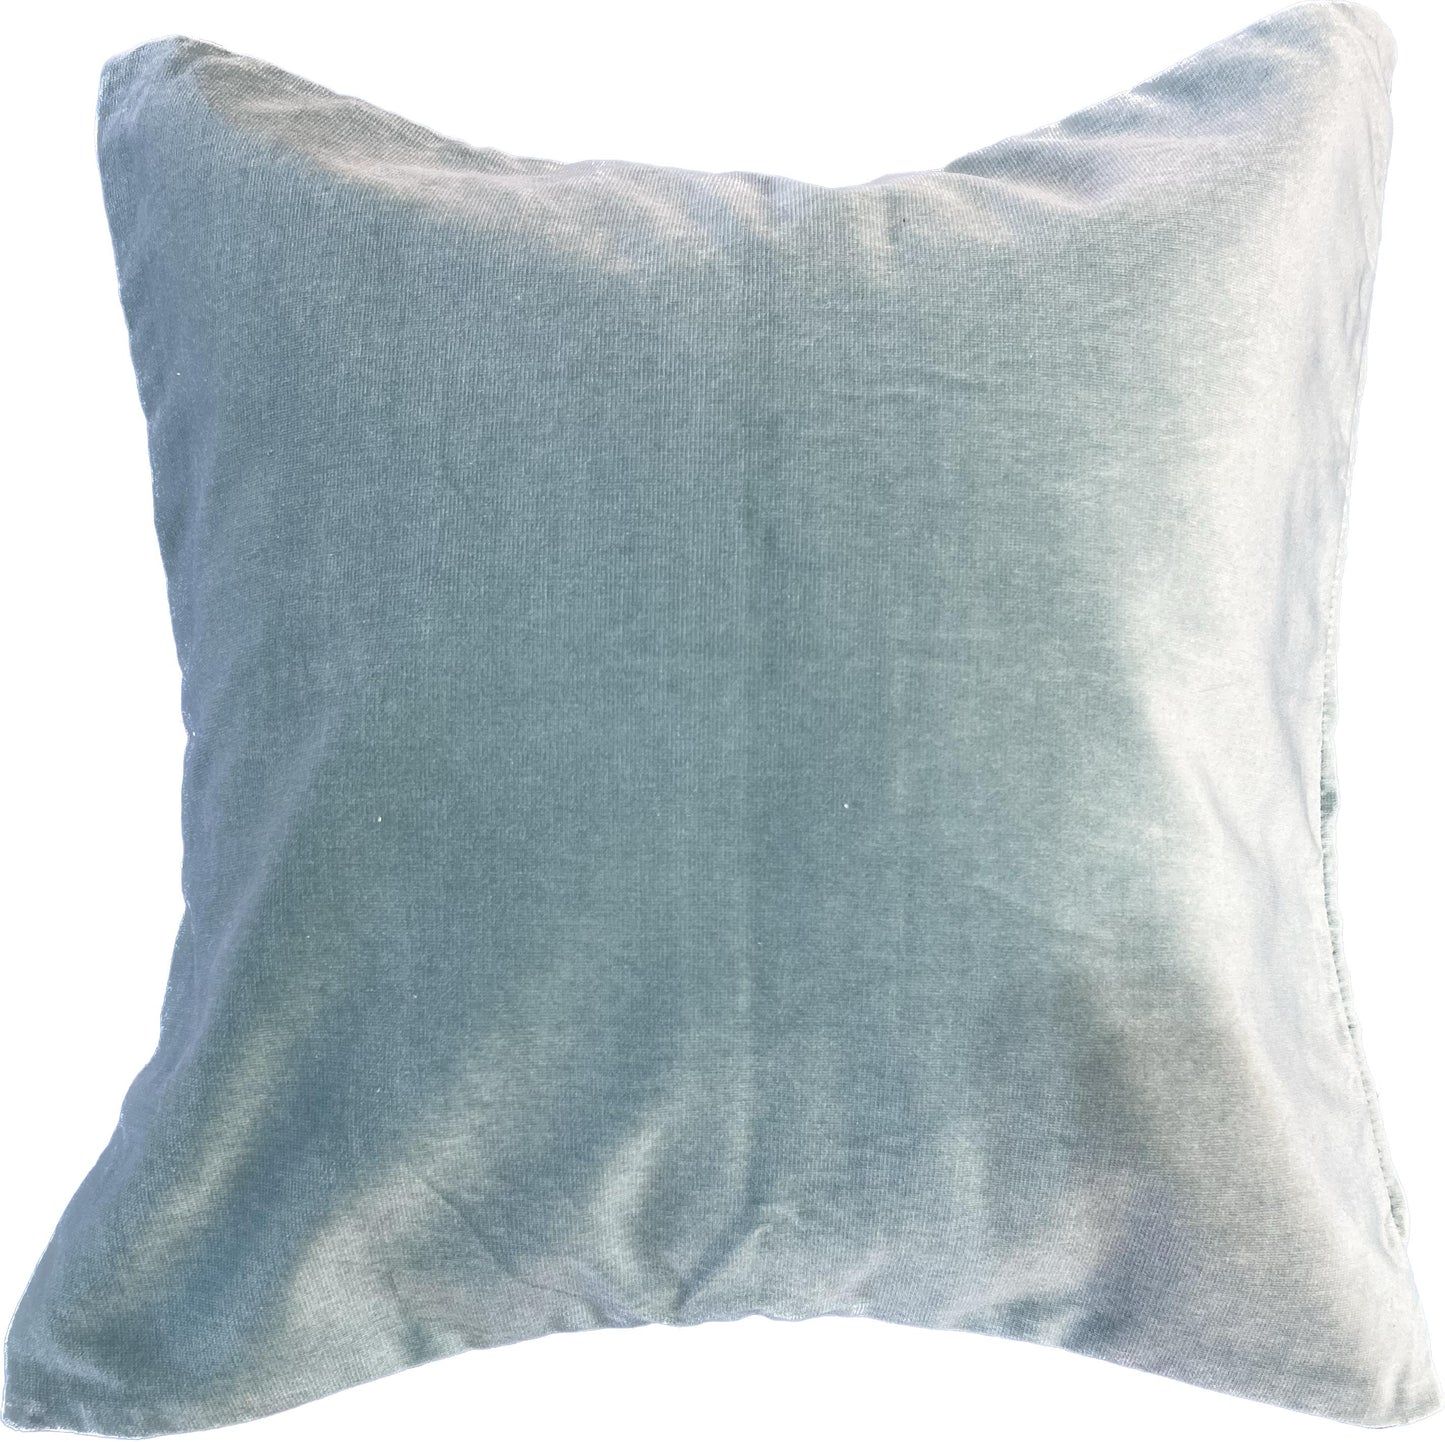 18"x18"  2-Sided Pillow Cover - Face: Motif / Back: Solid Velvet